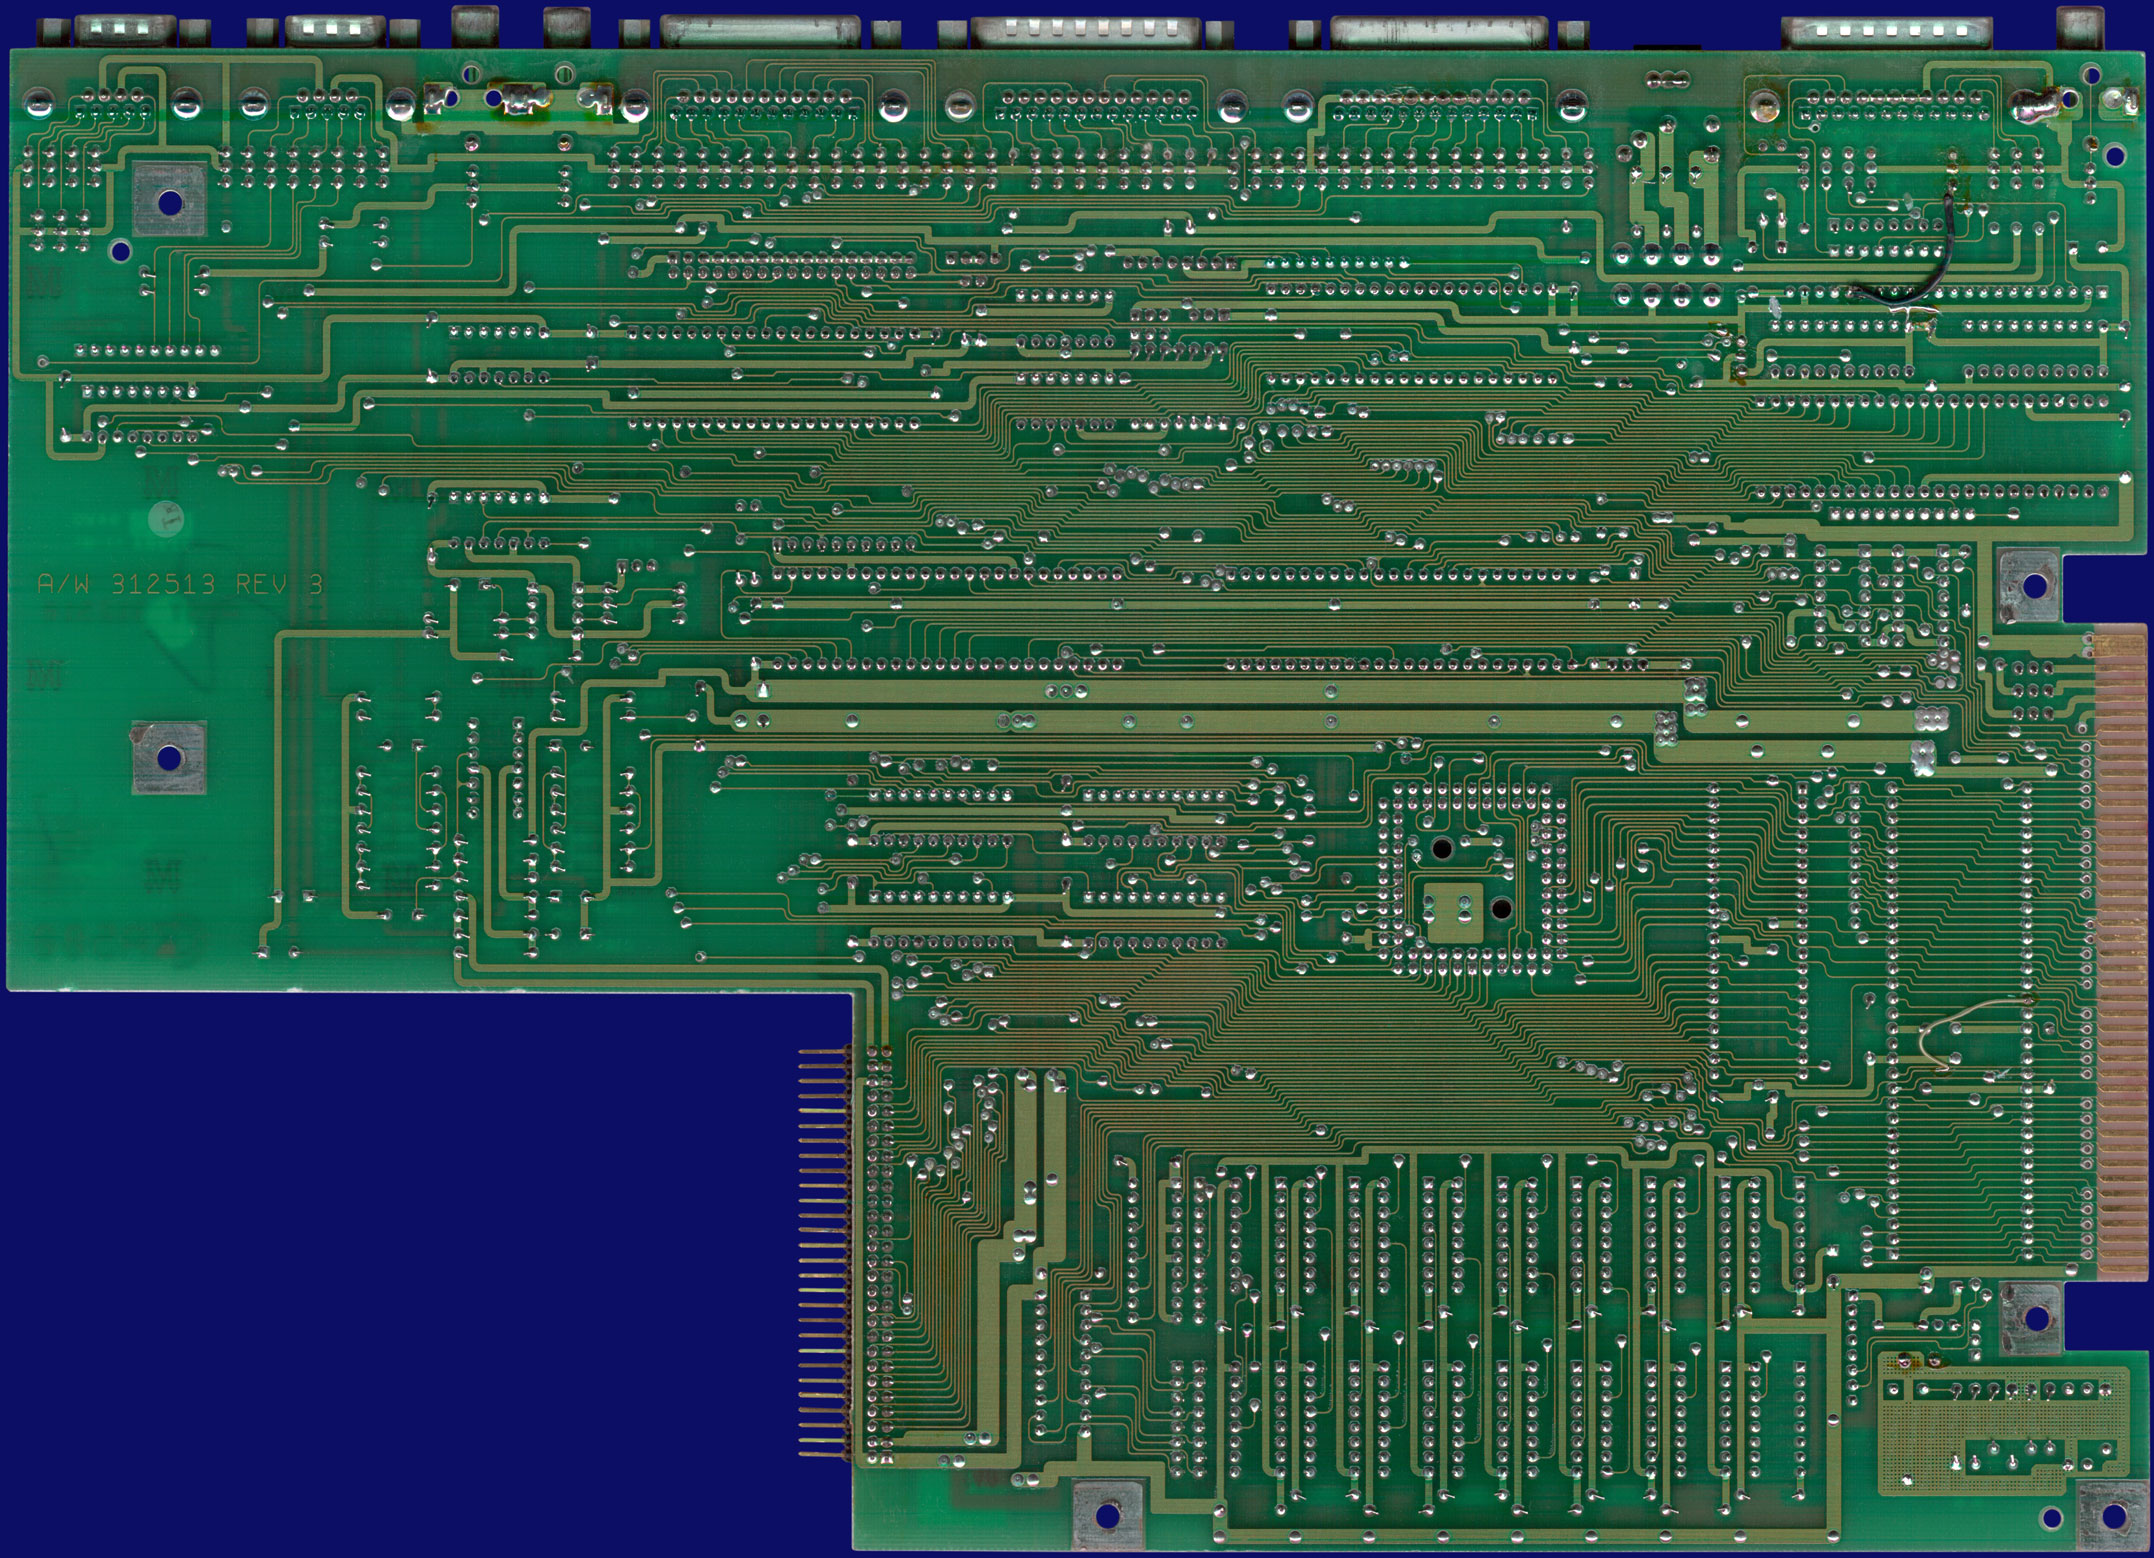 Commodore Amiga 500 & 500+ - Rev 3 motherboard, back side